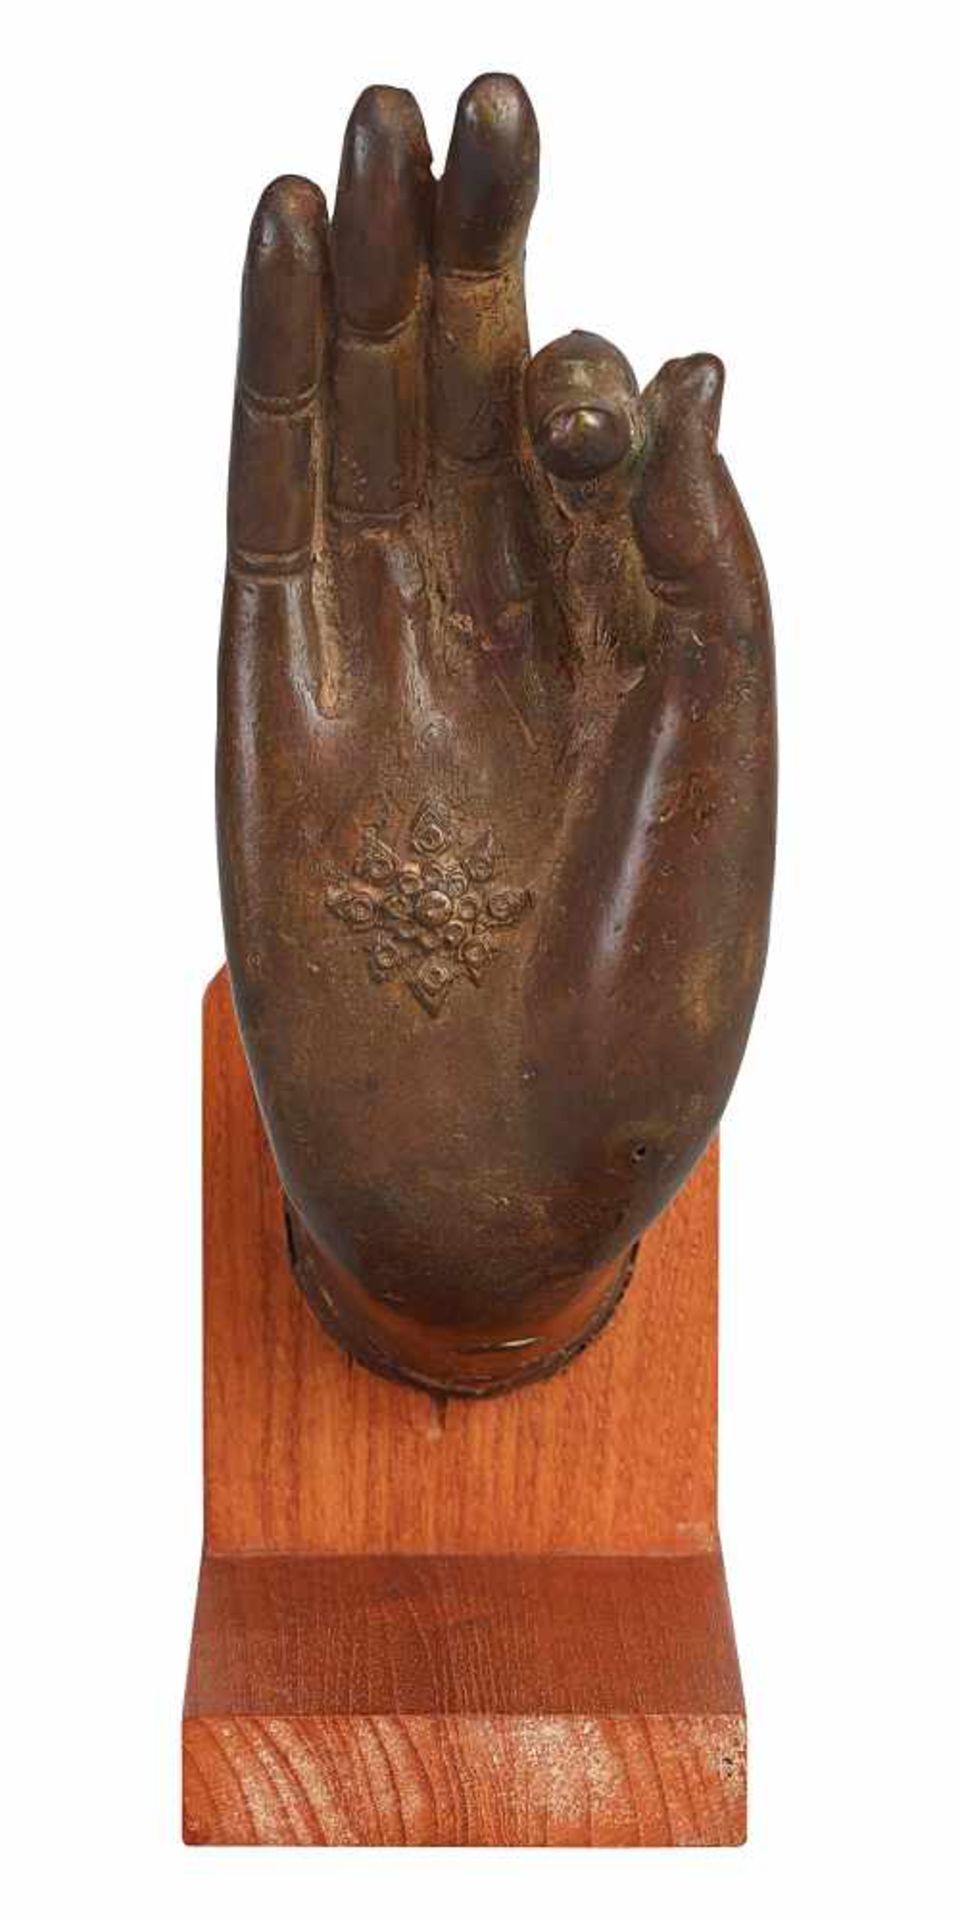 Hand eines meditierenden Buddhas - Image 2 of 2